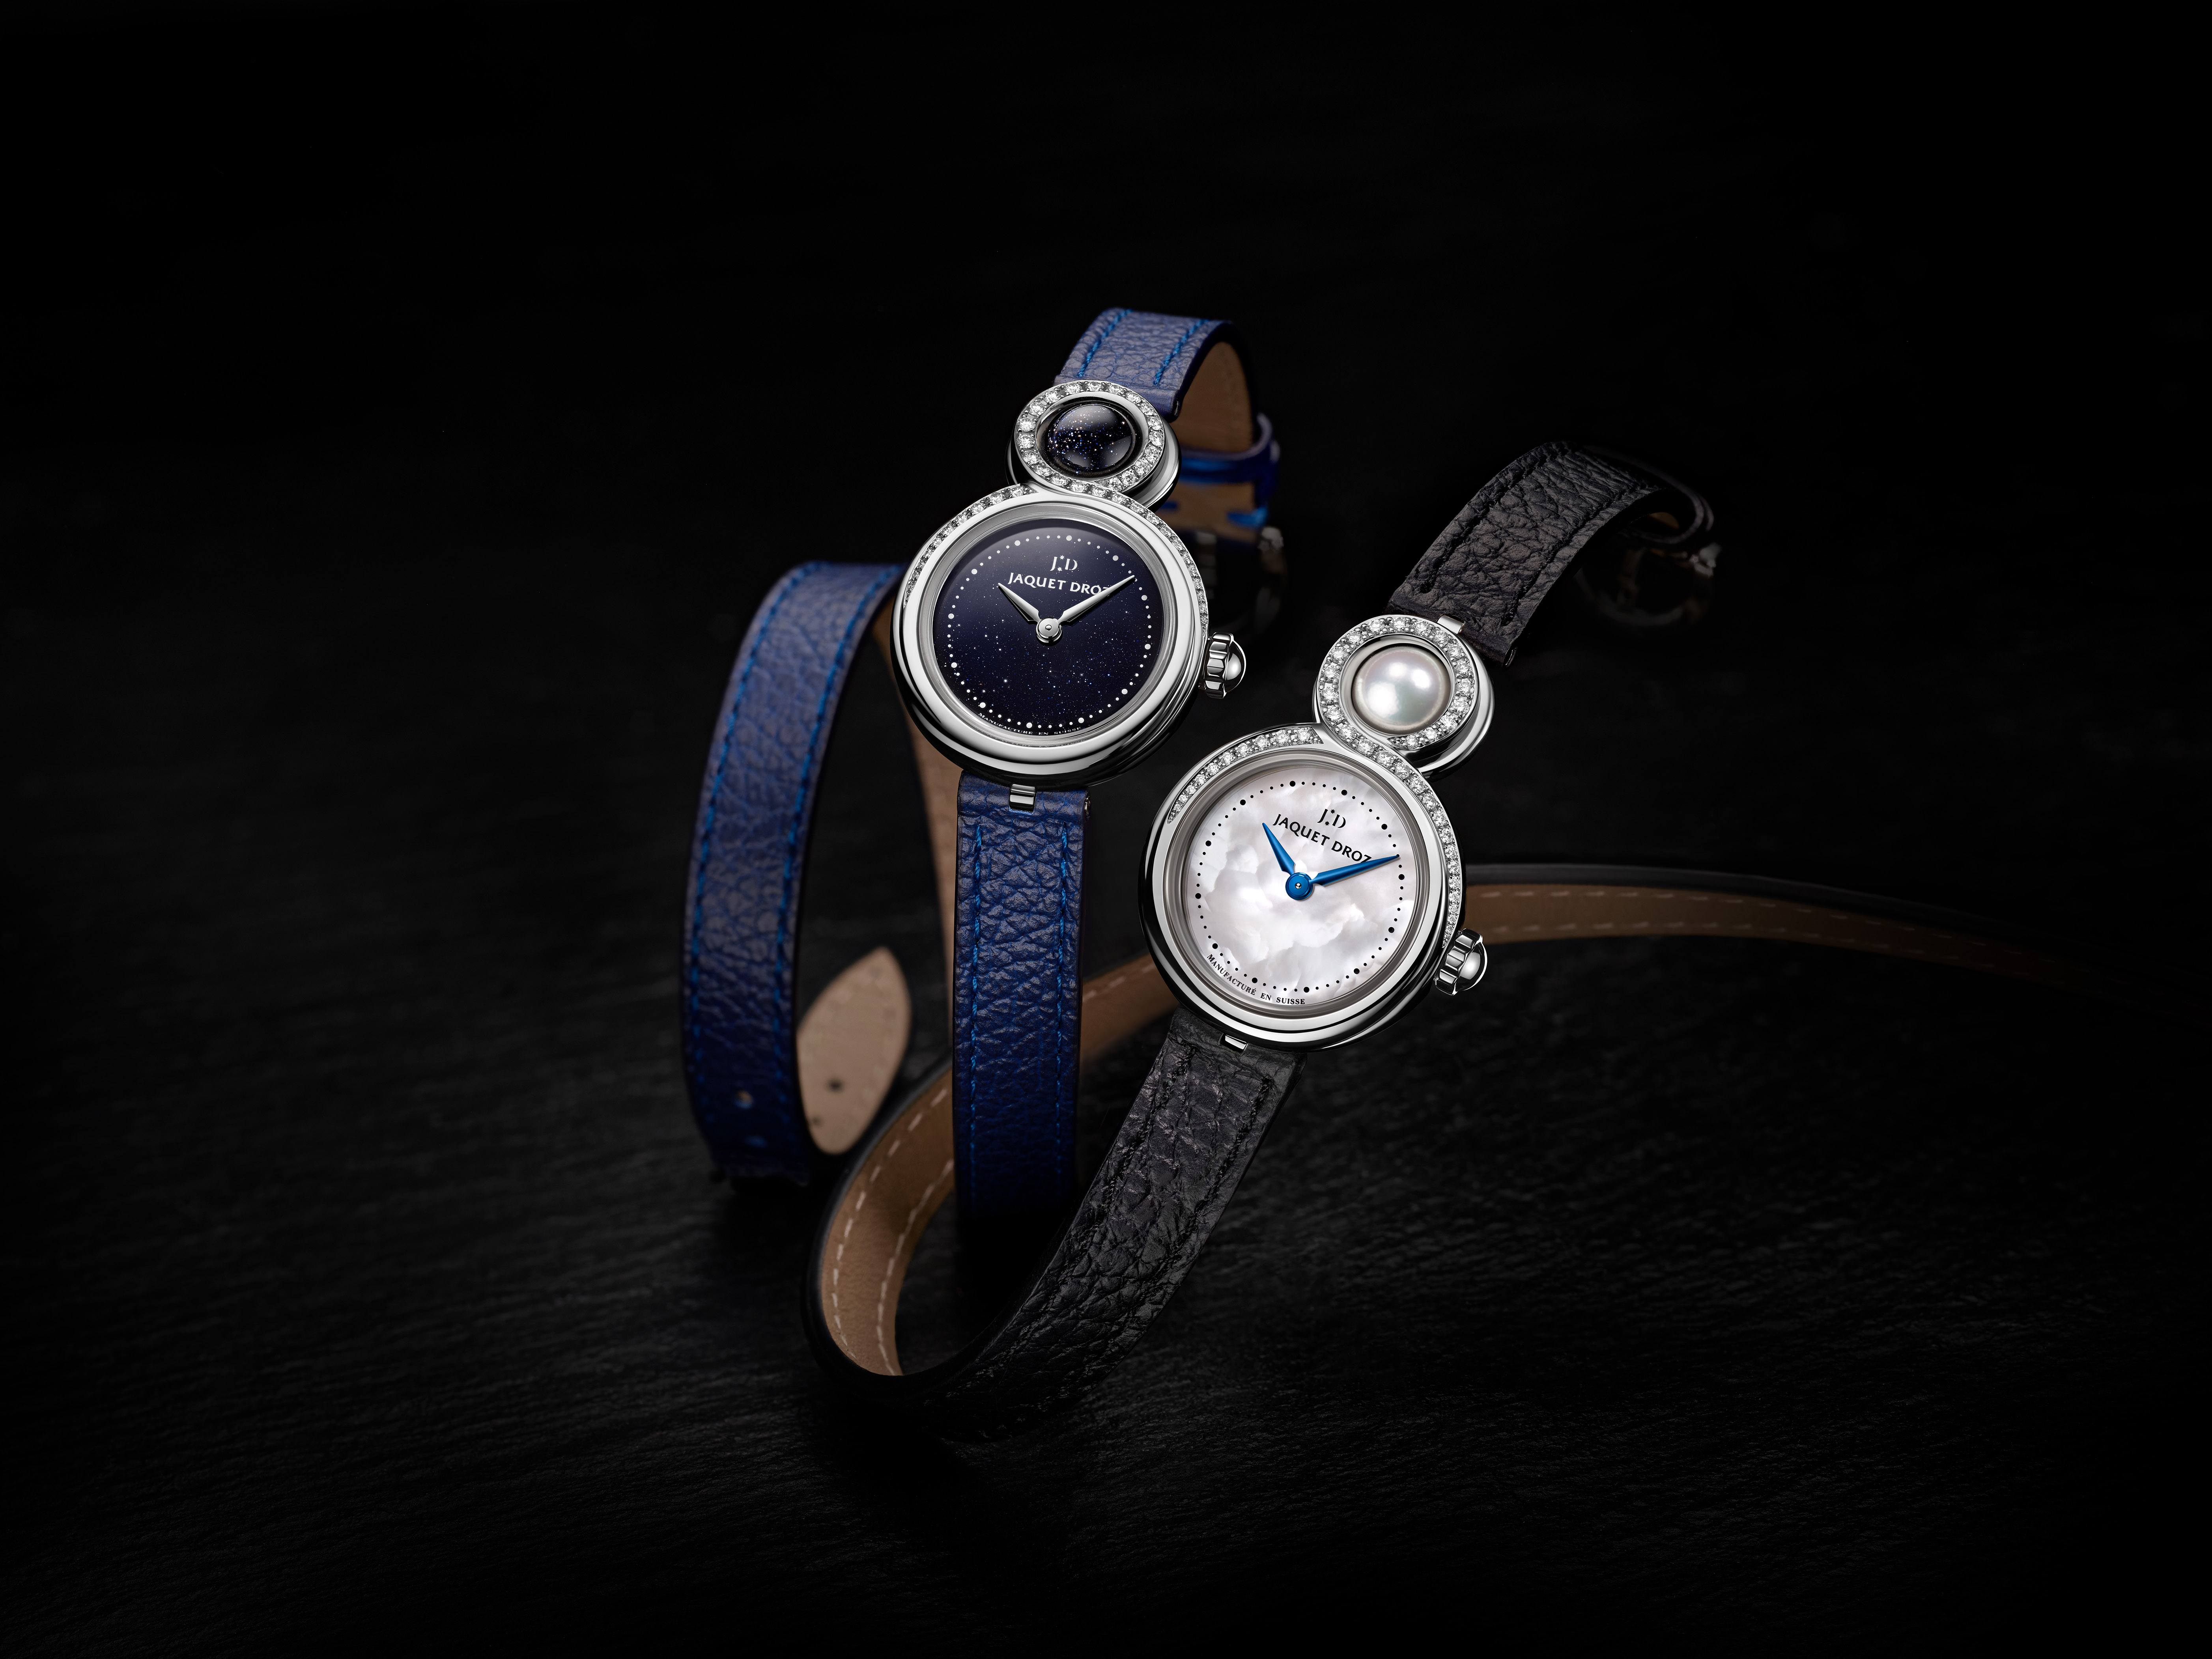 スイス超高級機械式腕時計ブランド、ジャケ・ドローより新サイズの